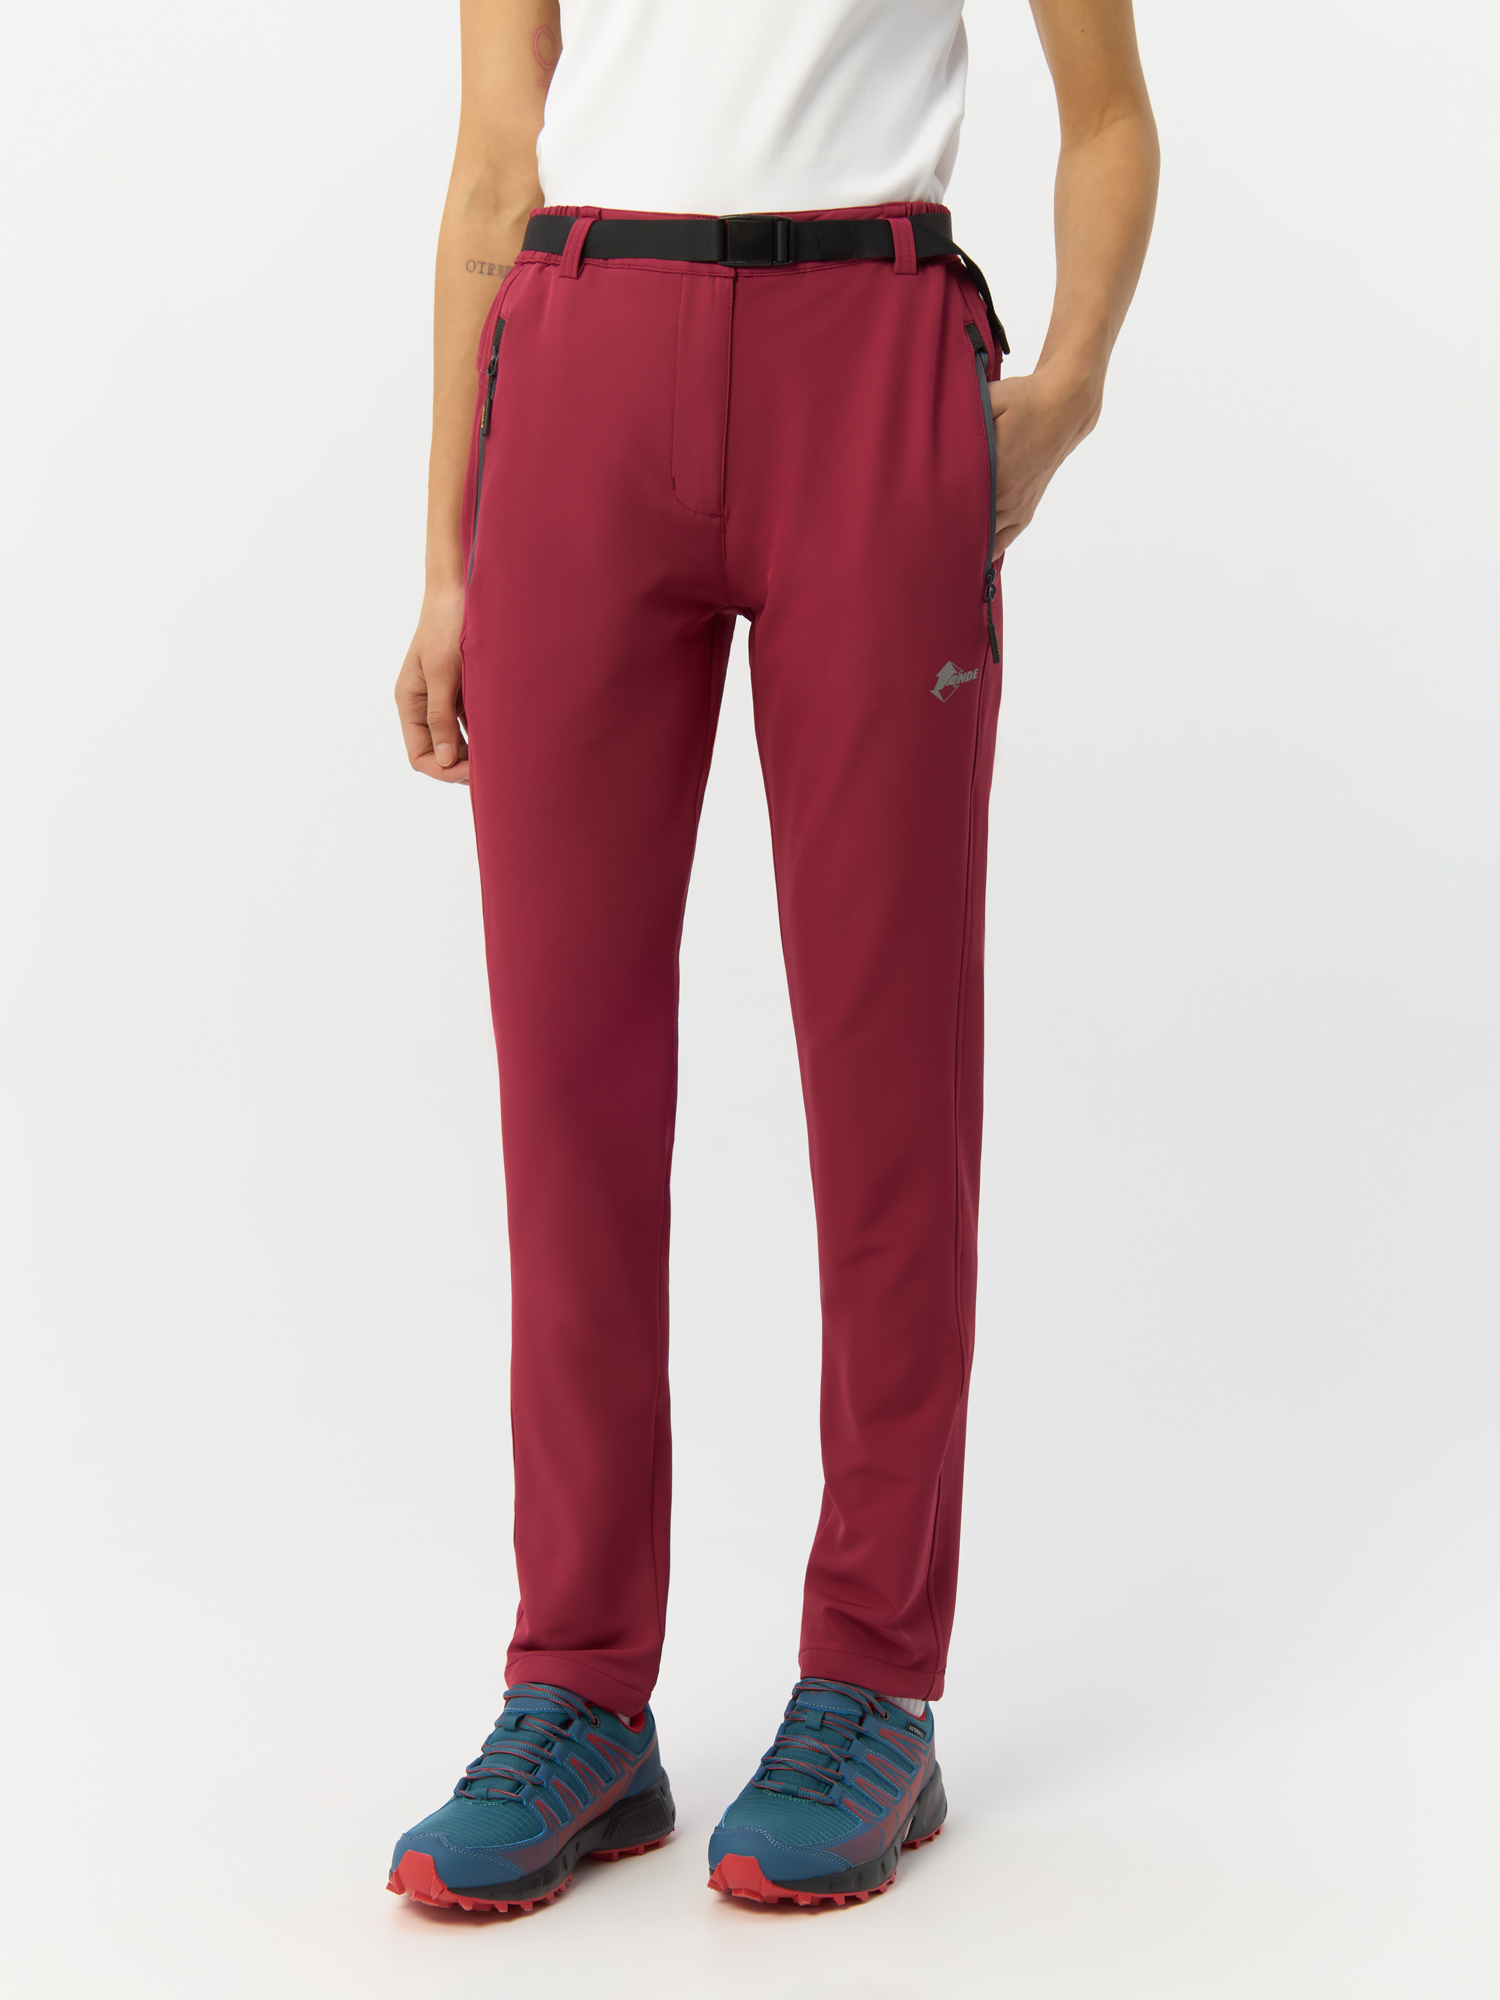 Спортивные брюки женские Ande Falcade W16023 бордовые 44 IT